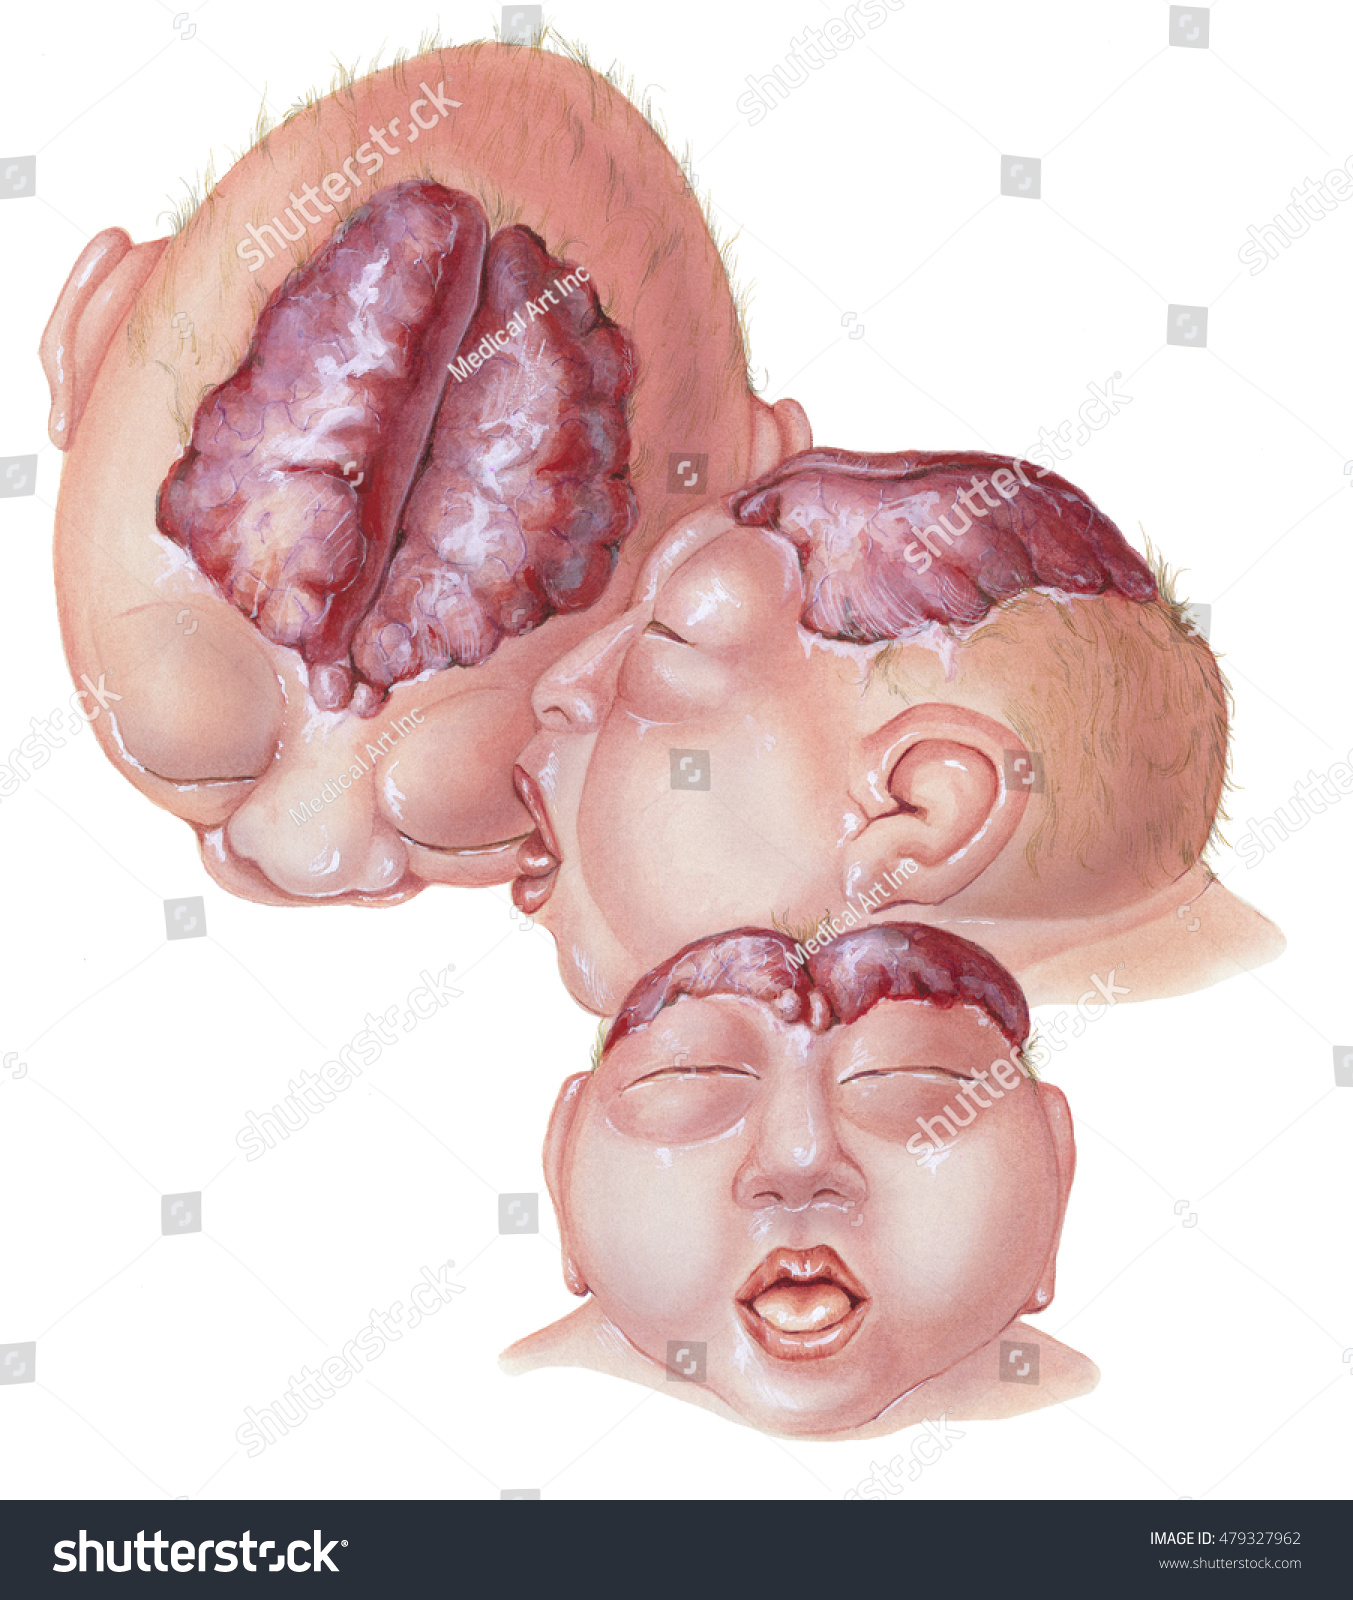 無脳症 複数の観点 脳と頭蓋骨の大部分が欠けていること 胎児の発達の早い段階で発生します ニューラルチューブの上部が閉じられない場合に発生する のイラスト素材